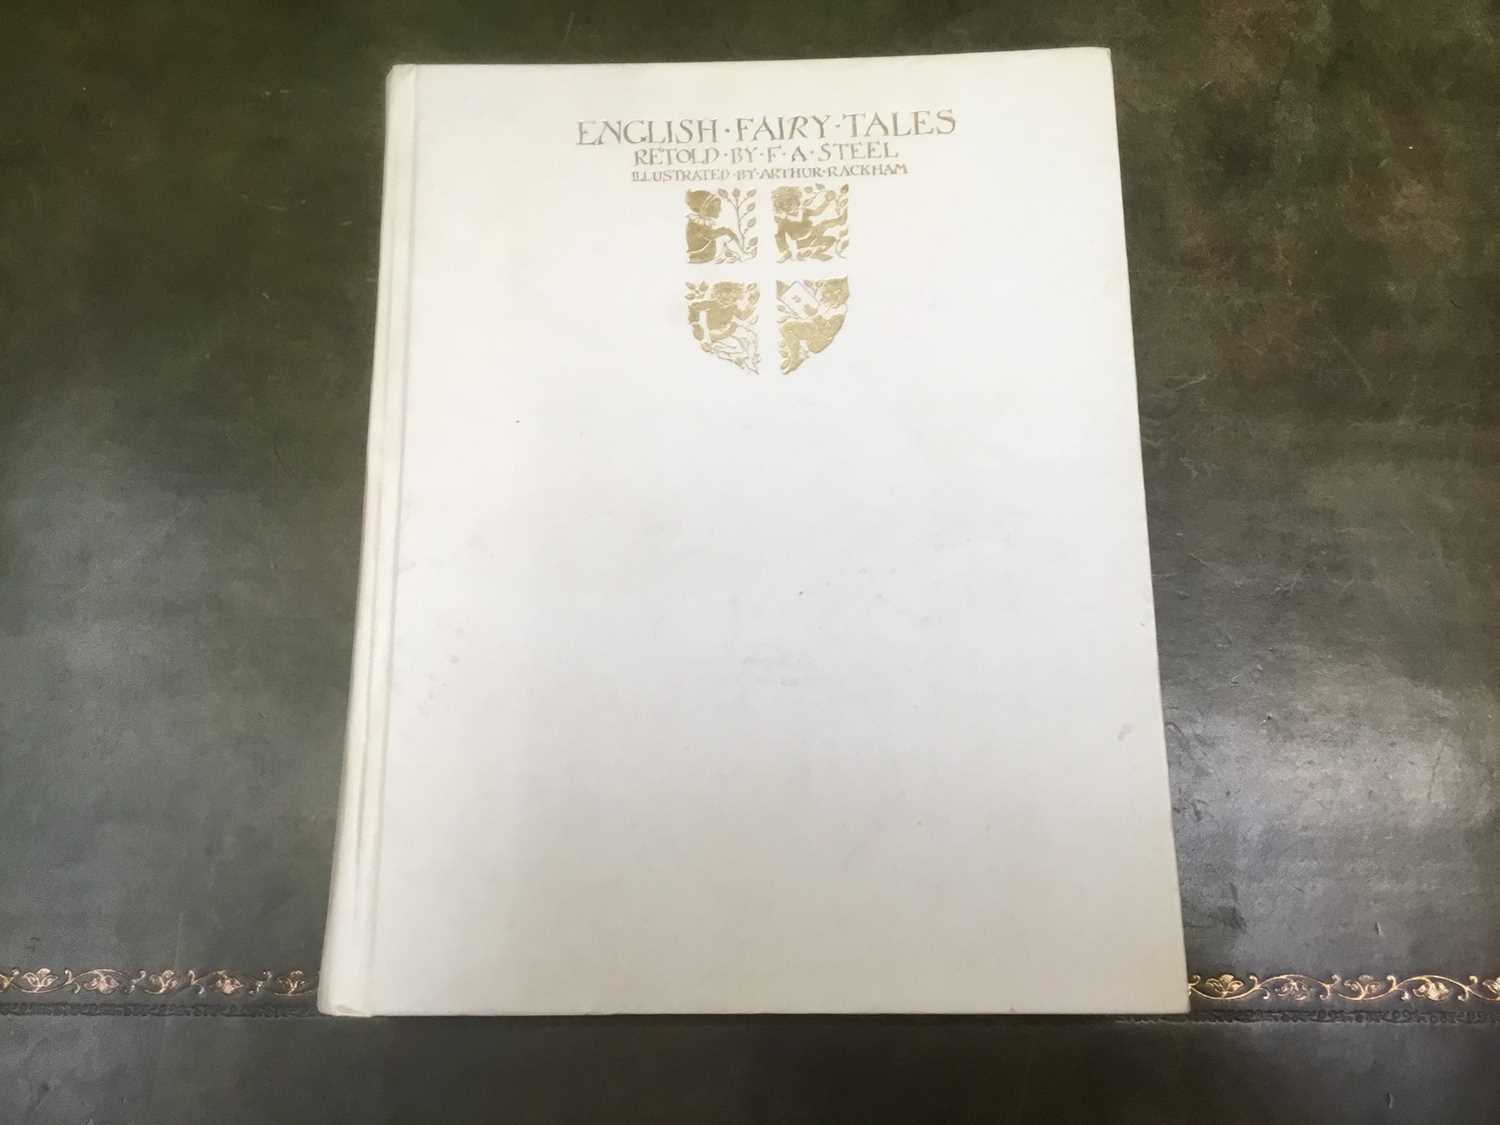 Arthur Rackham - English Fairy Tales, signed limited edition 389/500, white velum binding